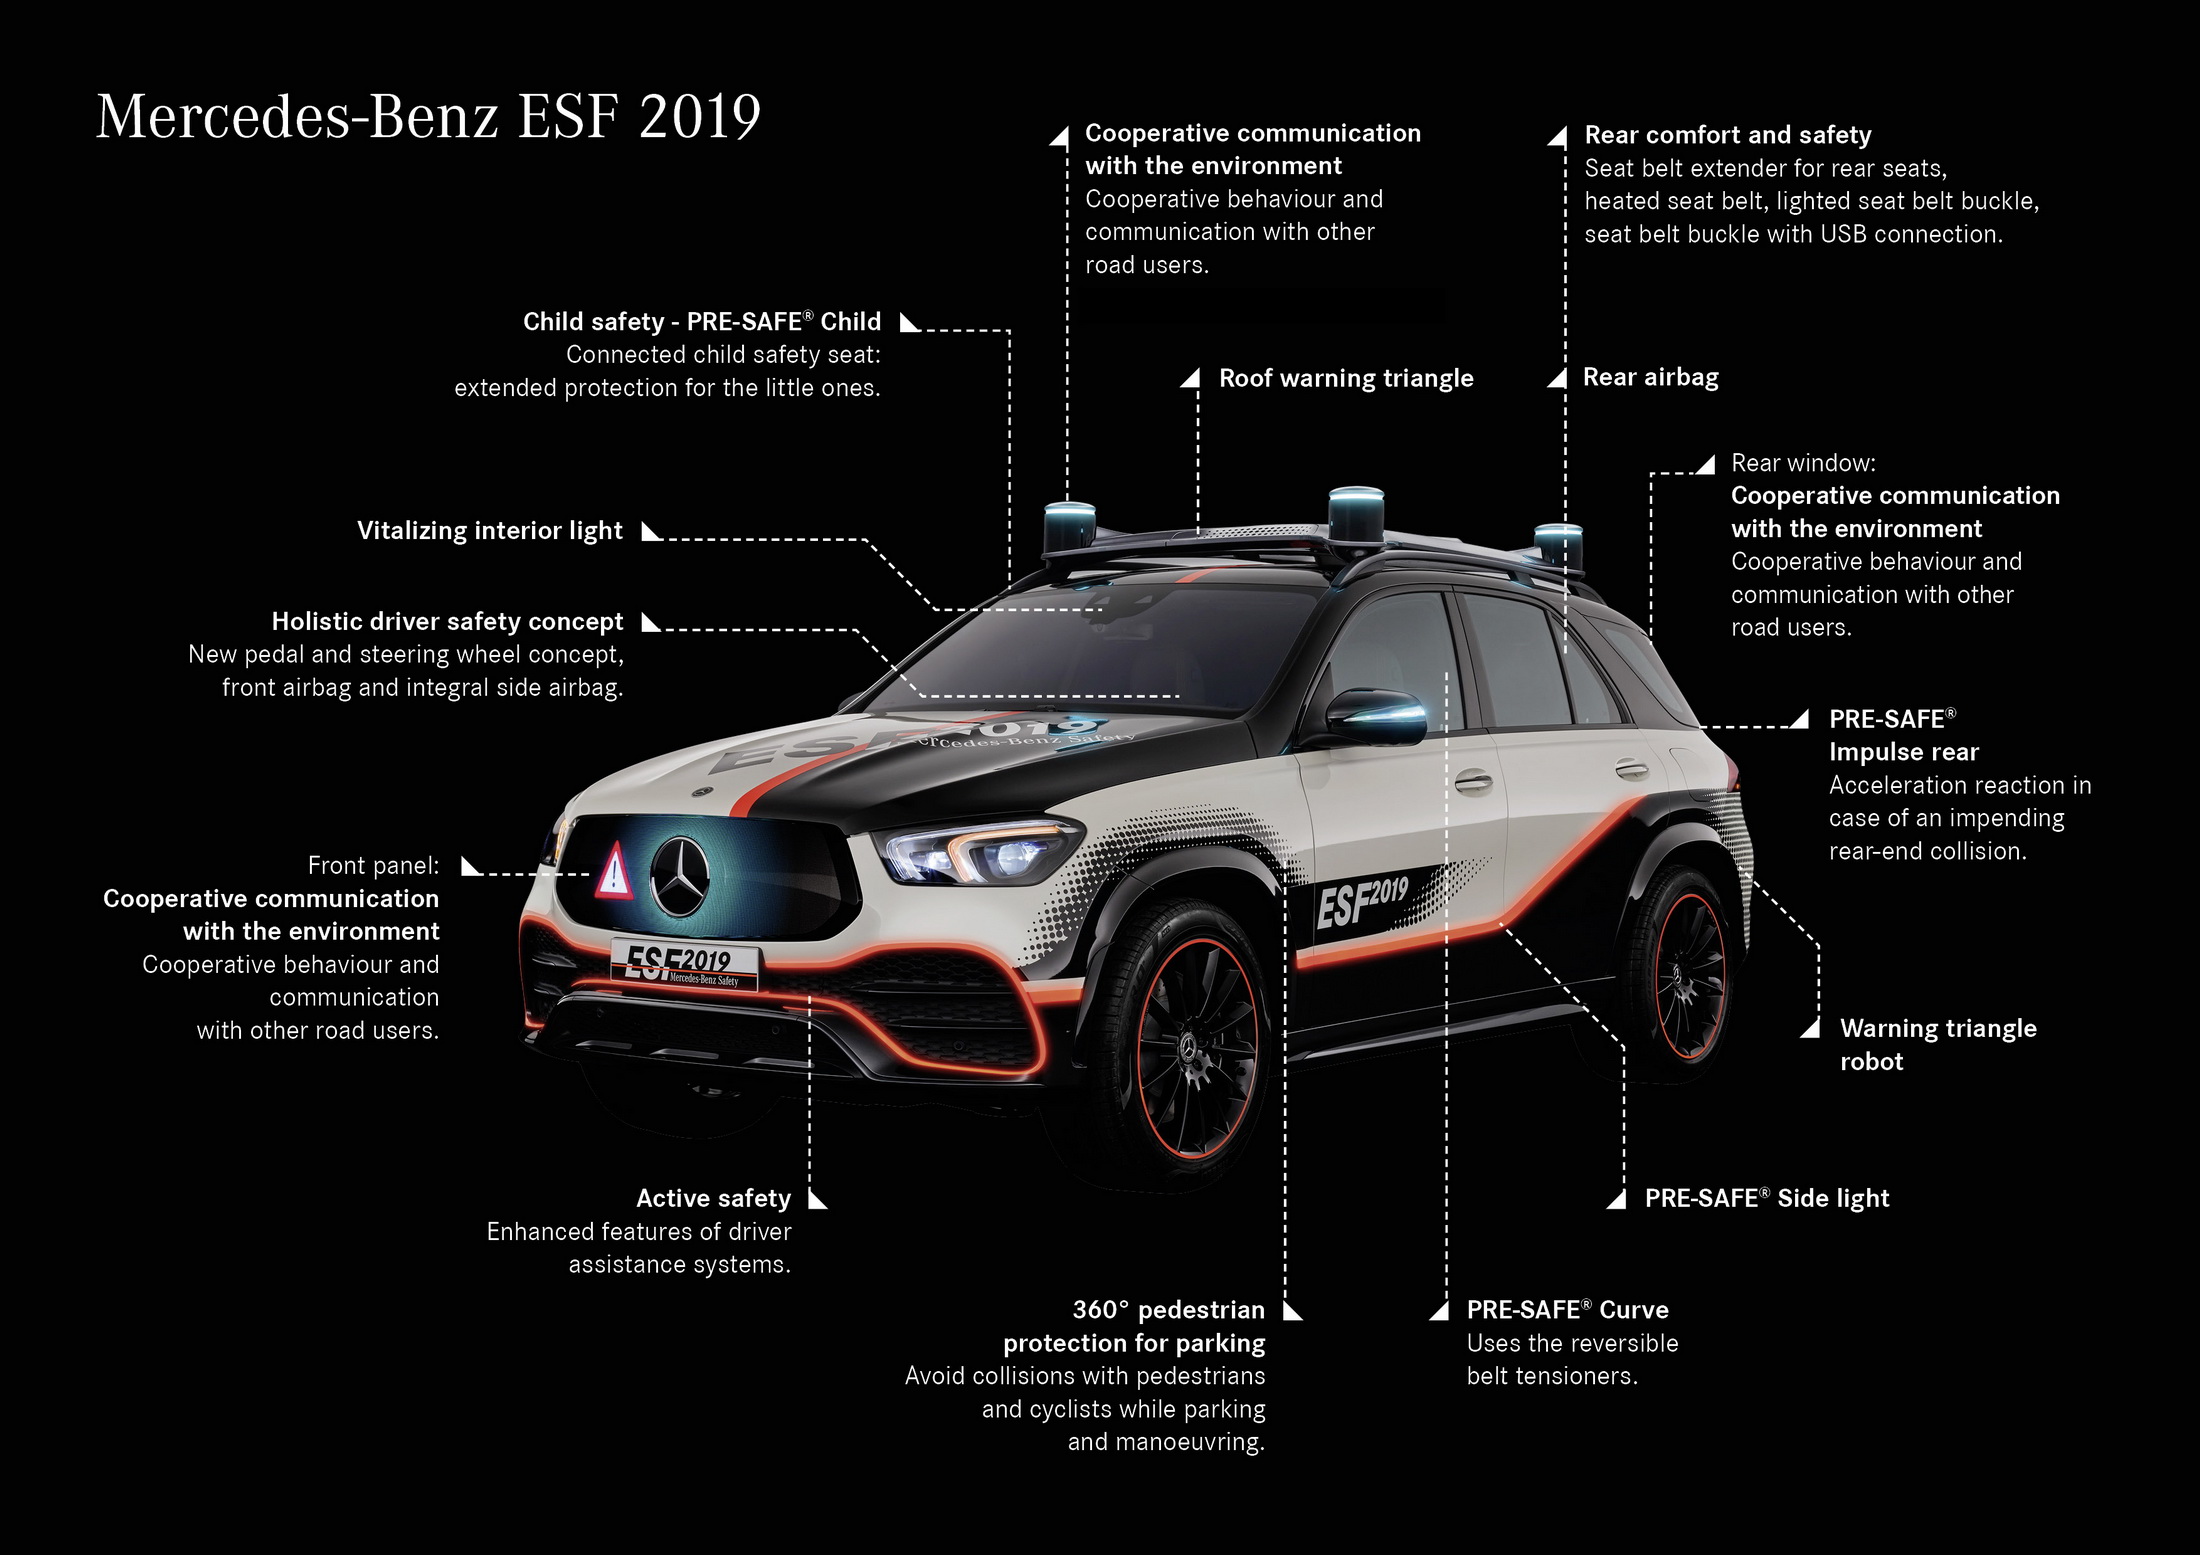 Mercedes-Benz: ESF 2019